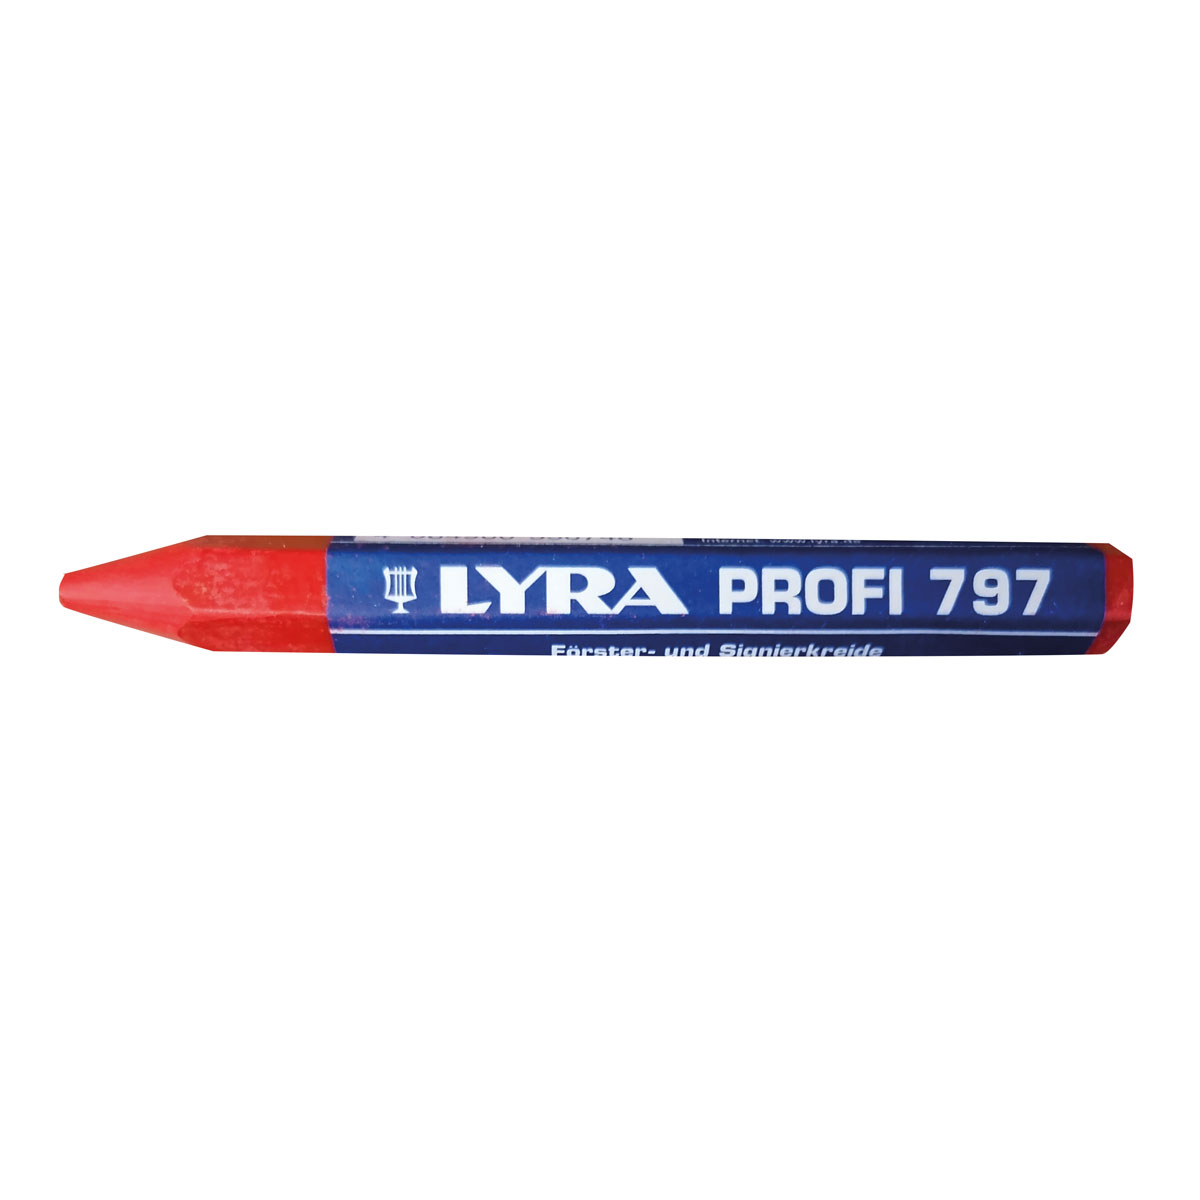 Förster-/Signierkreide, LYRA Profi 797, Ø 12mm, Länge 120 mm, sechseckig, rot